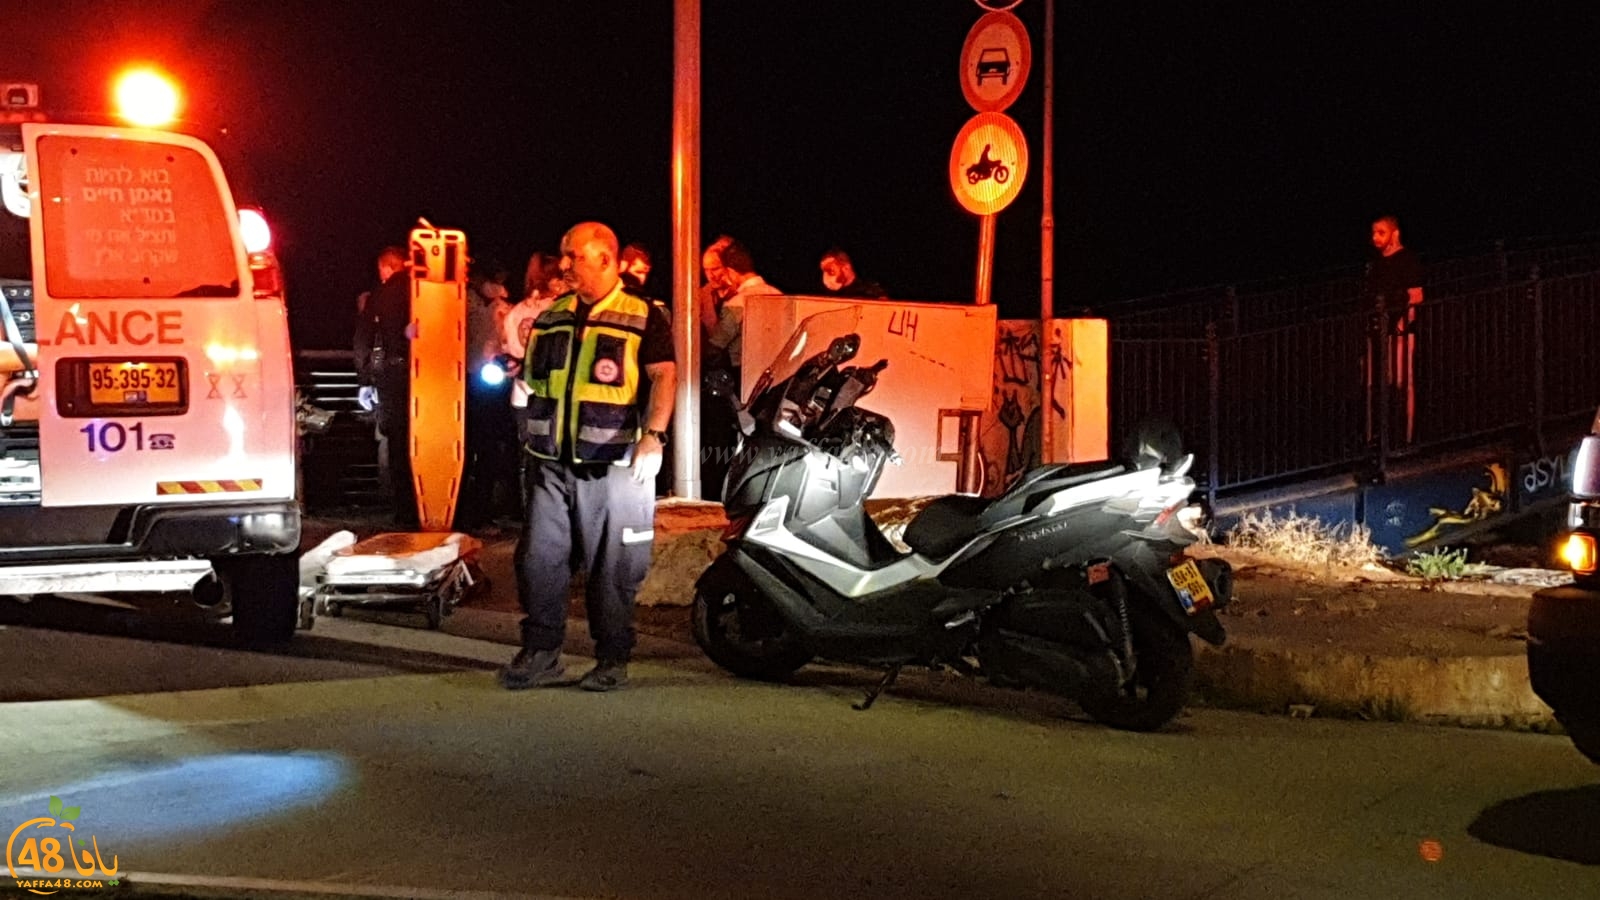  يافا: اصابة متوسطة لراكب دراجة هوائية اثر انزلاقه 